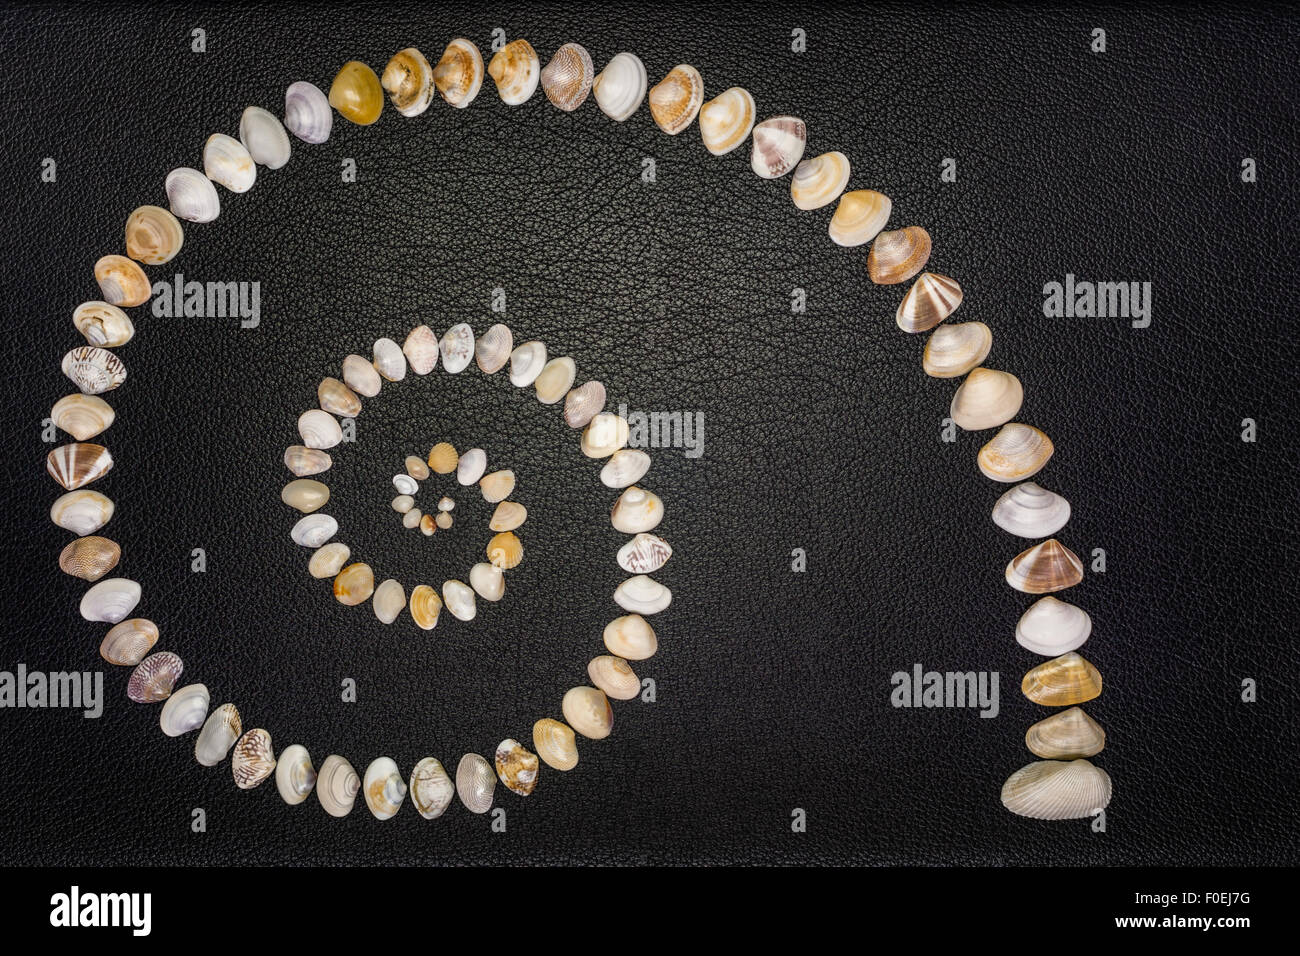 Ein Diversity-Konzept mit Muschelschalen von verschiedenen Größen, Formen, Muster und Farben als Nautilus Muschel Wachstumskurve angeordnet. Stockfoto